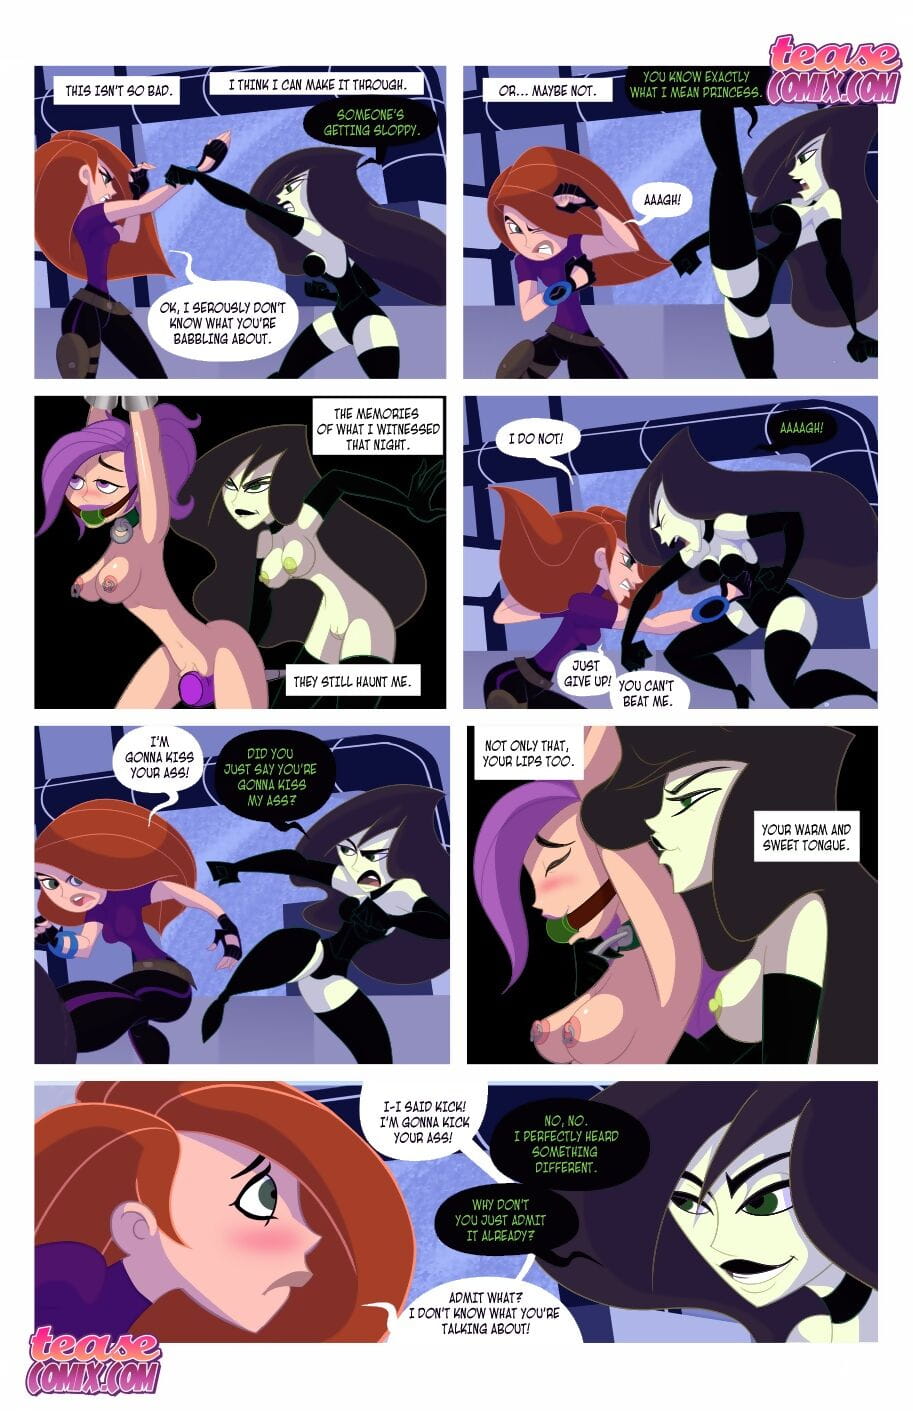 teasecomix ironwolf – kinky mogelijk probleem #02 page 1